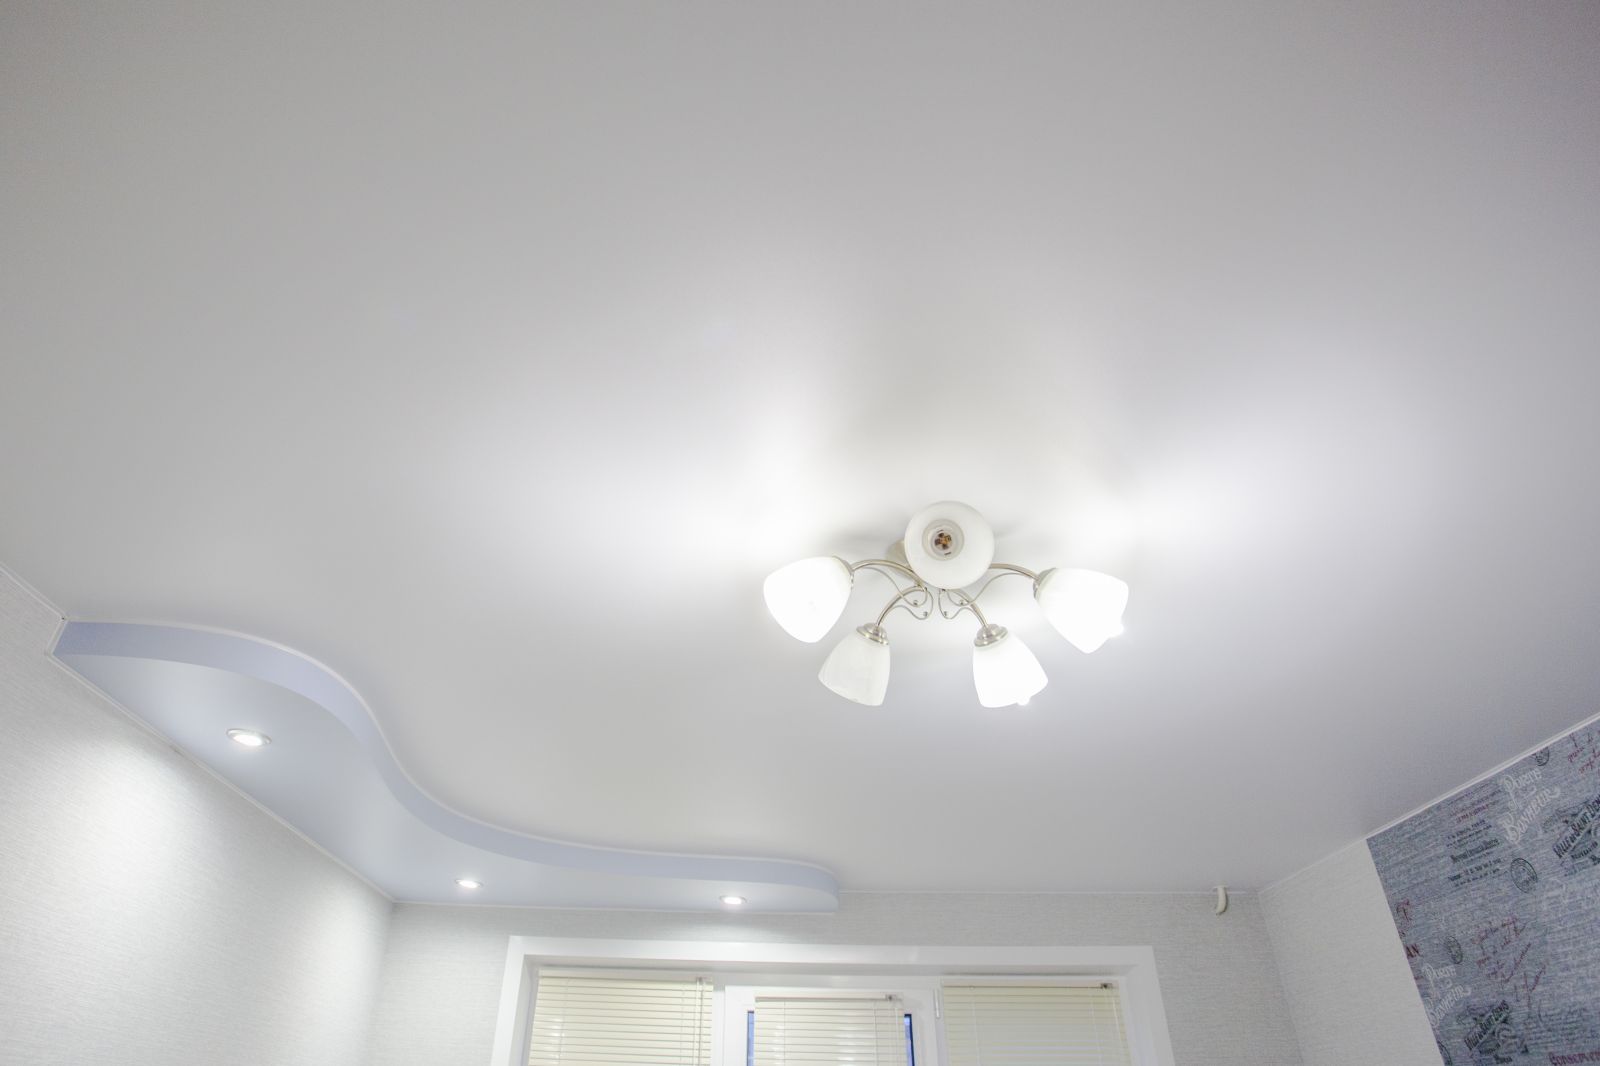 Двухуровневый потолок без подсветки, криволинейная конструкция в одном из углов, материал потолка - белый матовый